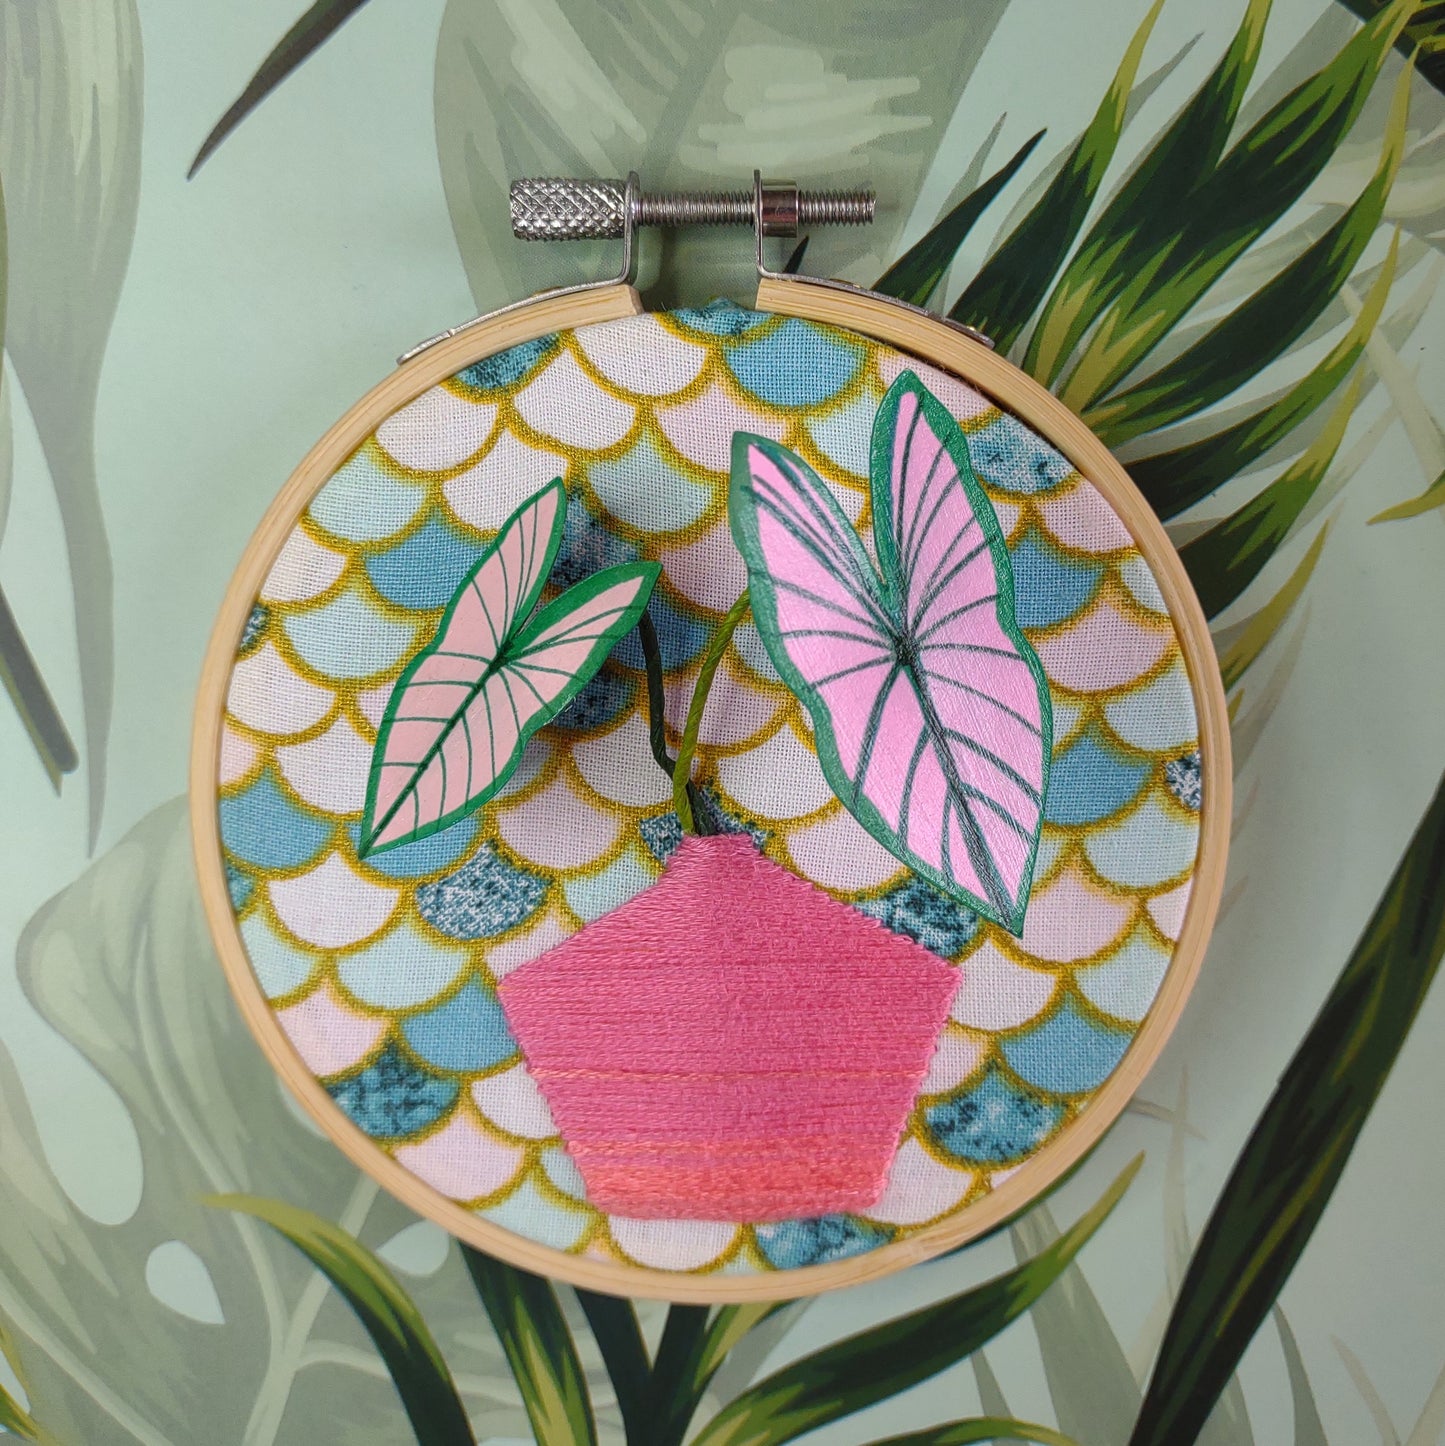 Caladium Handmade Paper Plant in Embroidered Vase